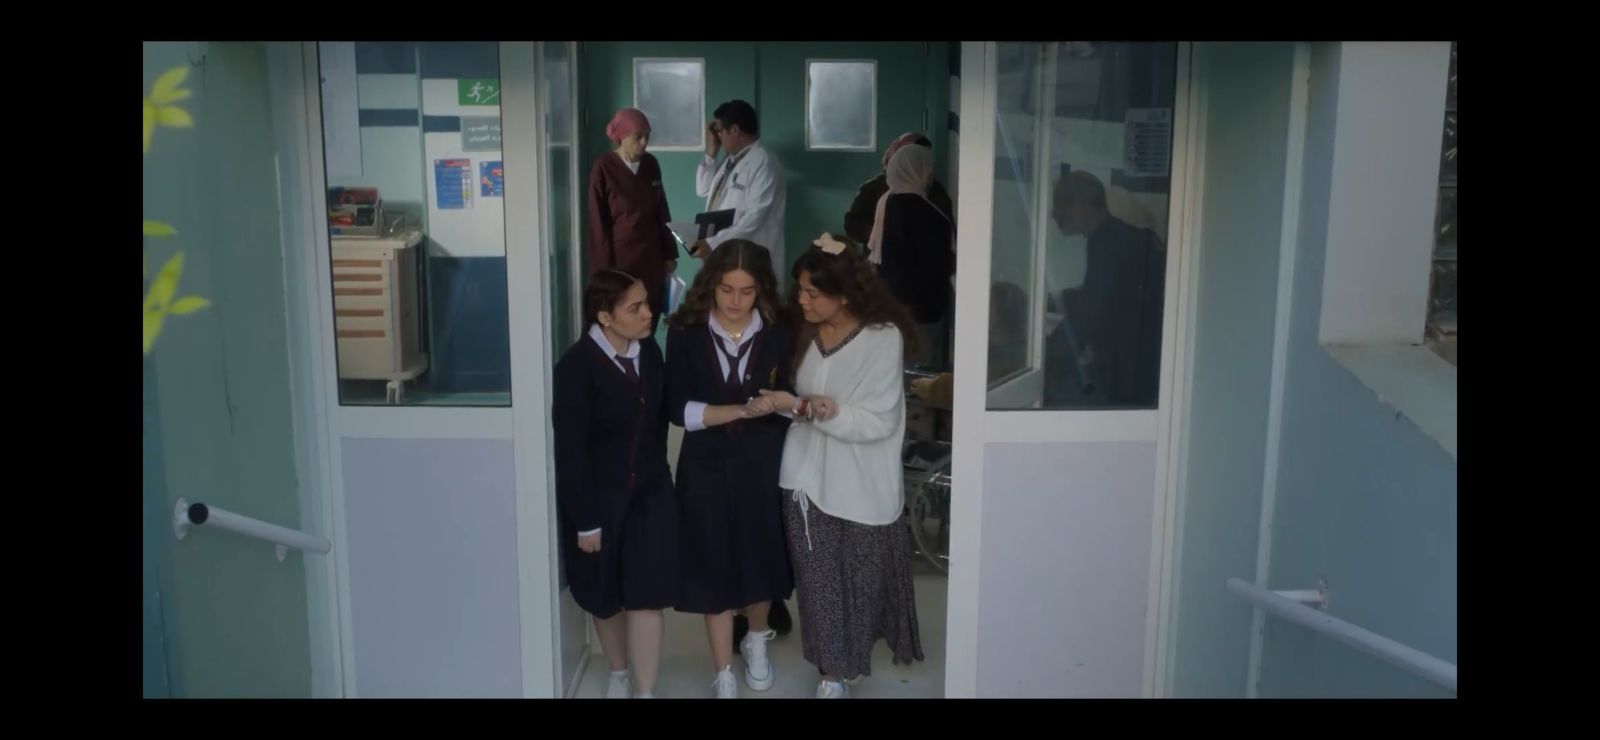 مسلسل صدفة الحلقة 1 .. ريهام حجاج تنقذ نور إيهاب وتهربها من المستشفي (3)